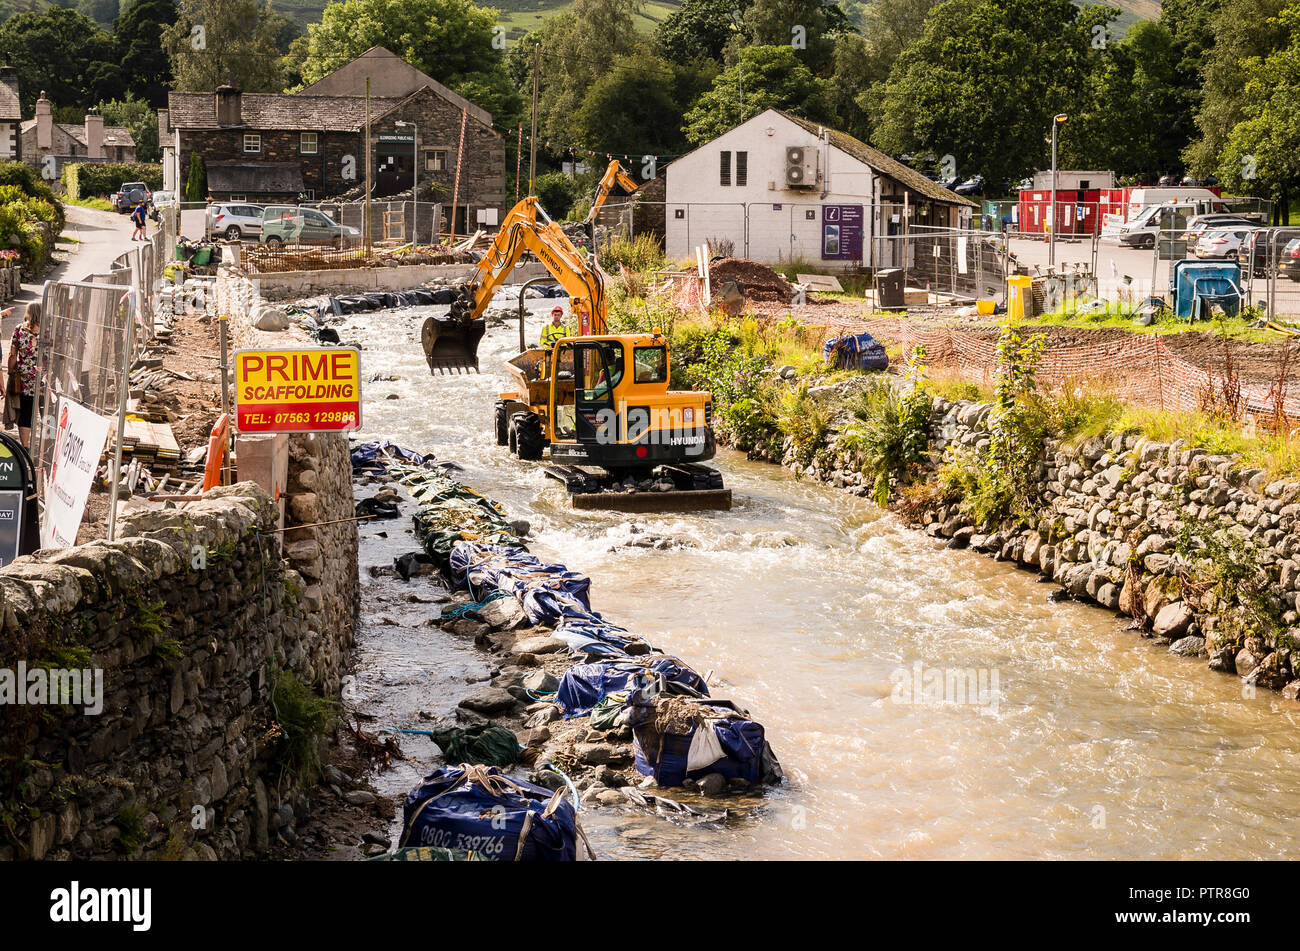 Löschen Sie die Rückstände aus der Fluß in Glendinning Patterdale Cumbria England Großbritannien nach verheerenden Überschwemmungen verursacht schwere Schäden im Dorf und lokal sind. Stockfoto